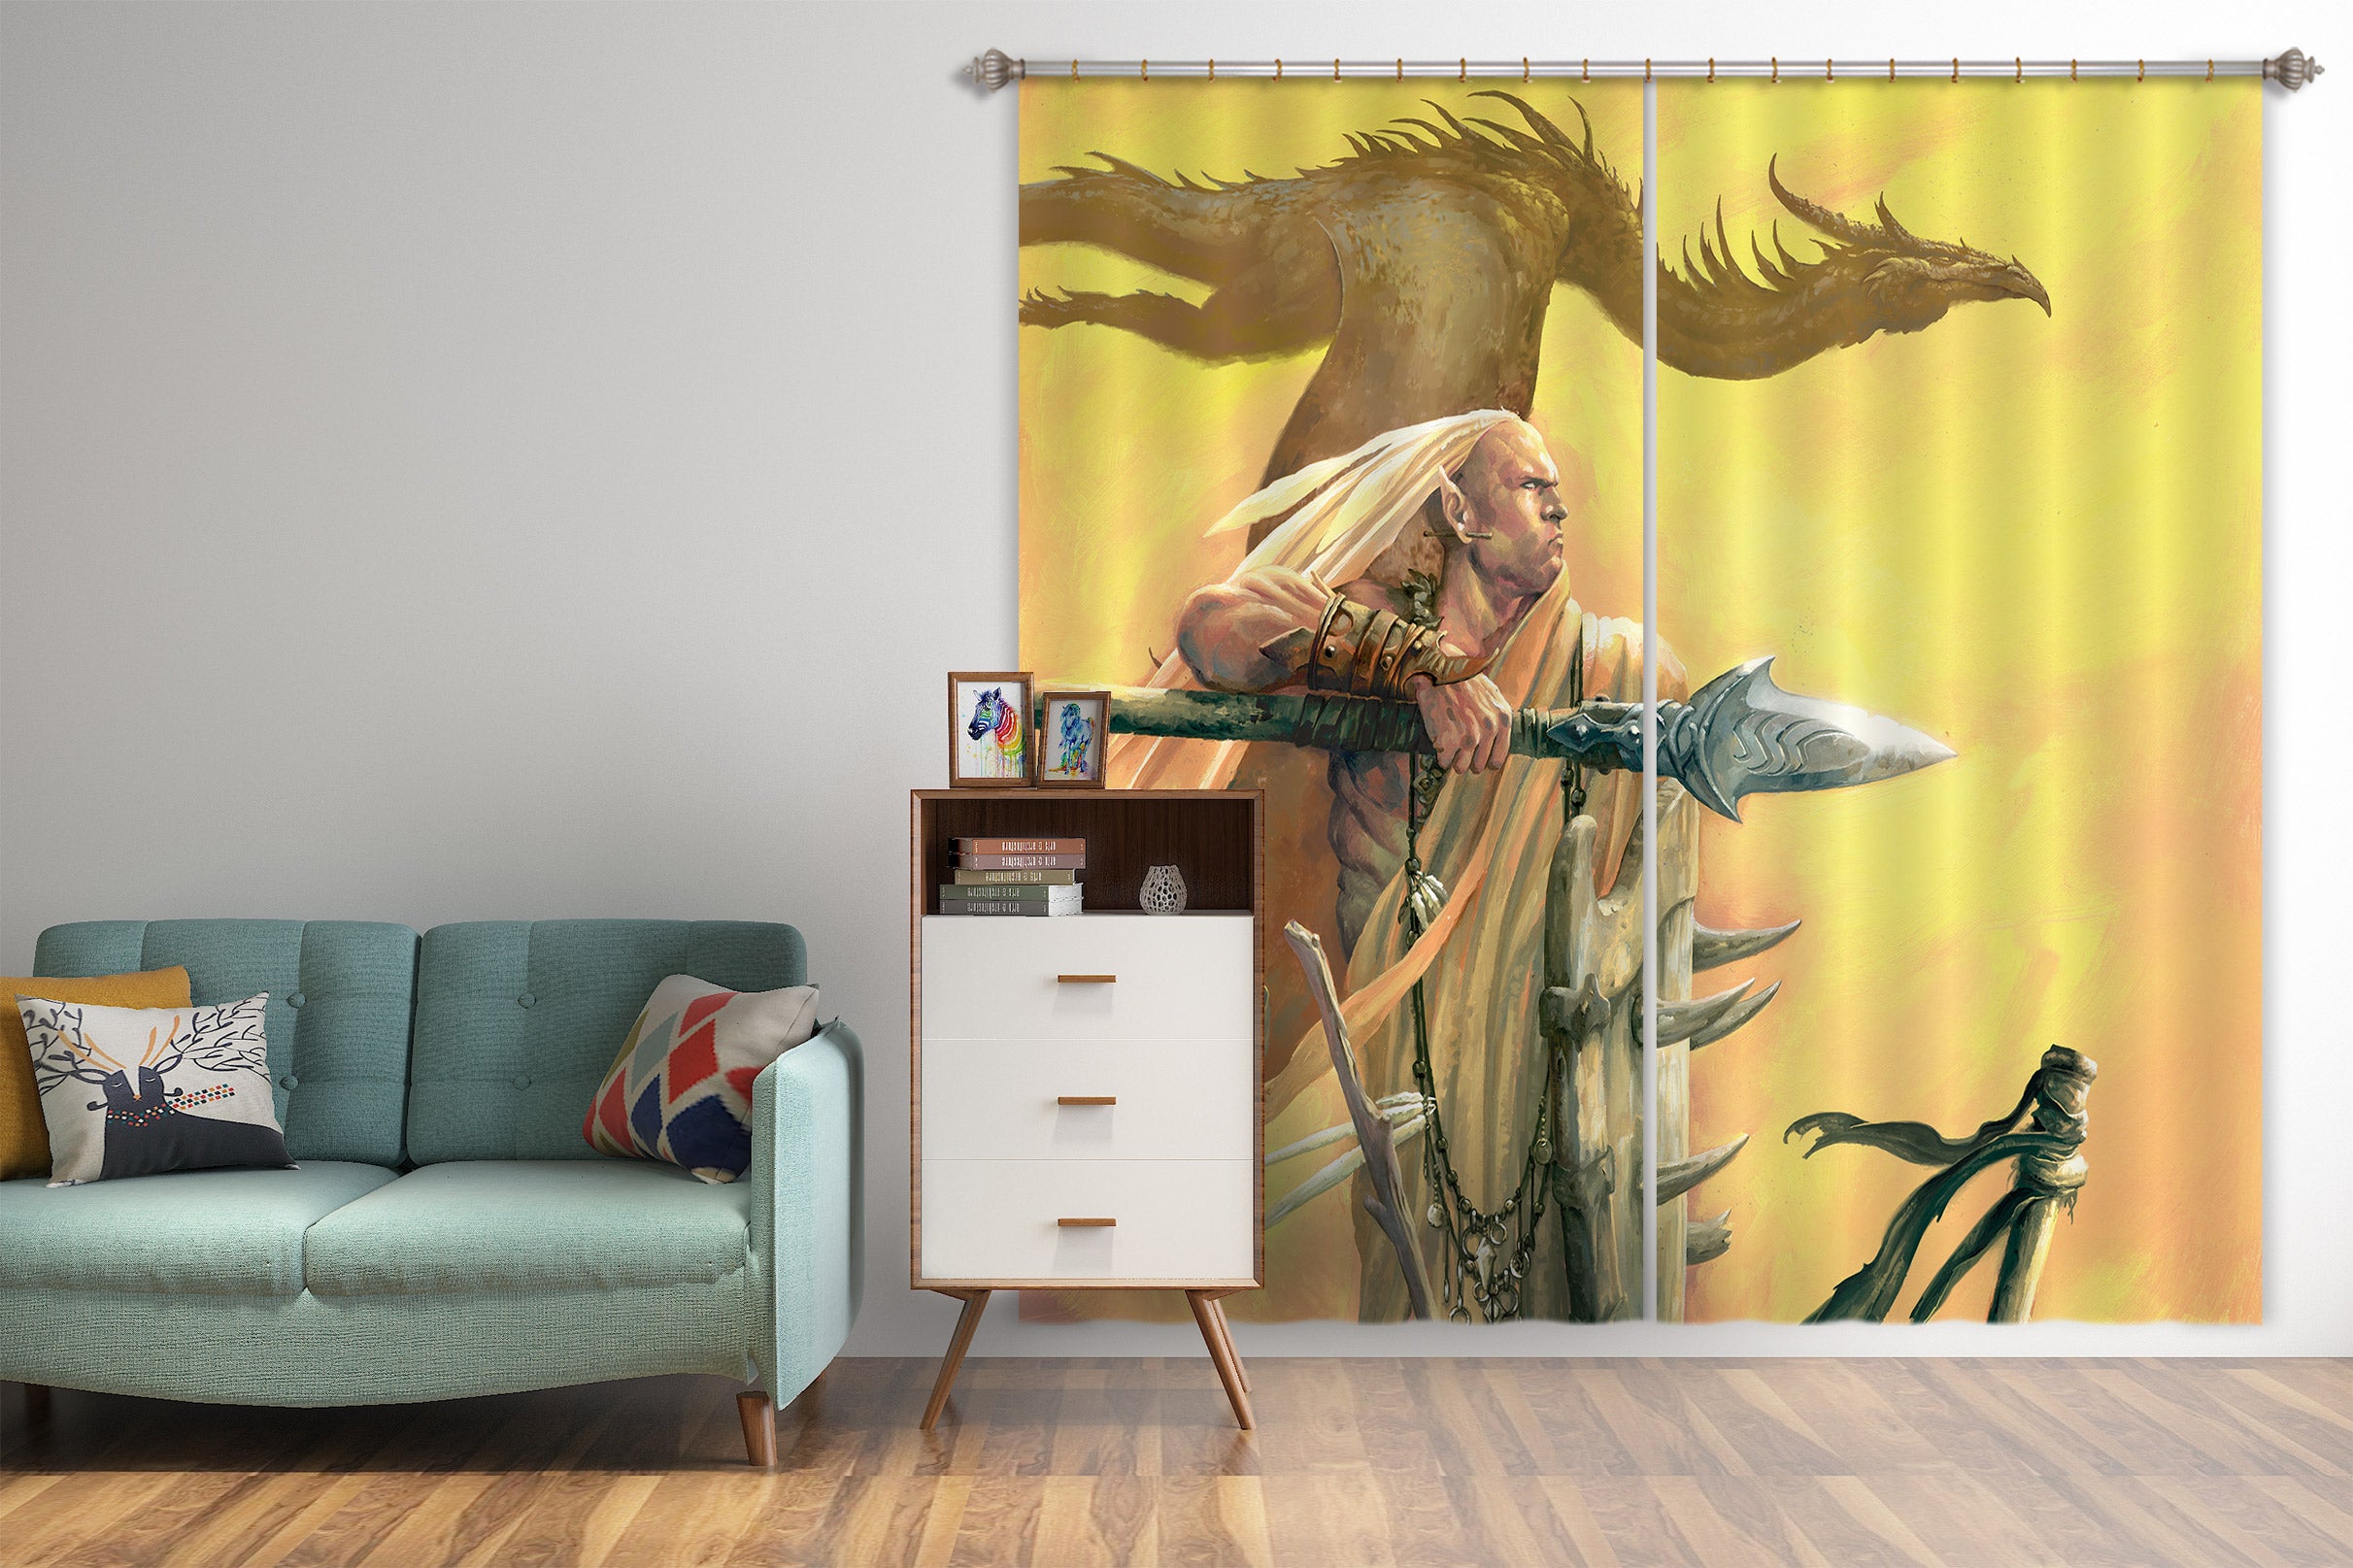 3D Long Hair Sword Man Dragon 7204 Ciruelo Curtain Curtains Drapes